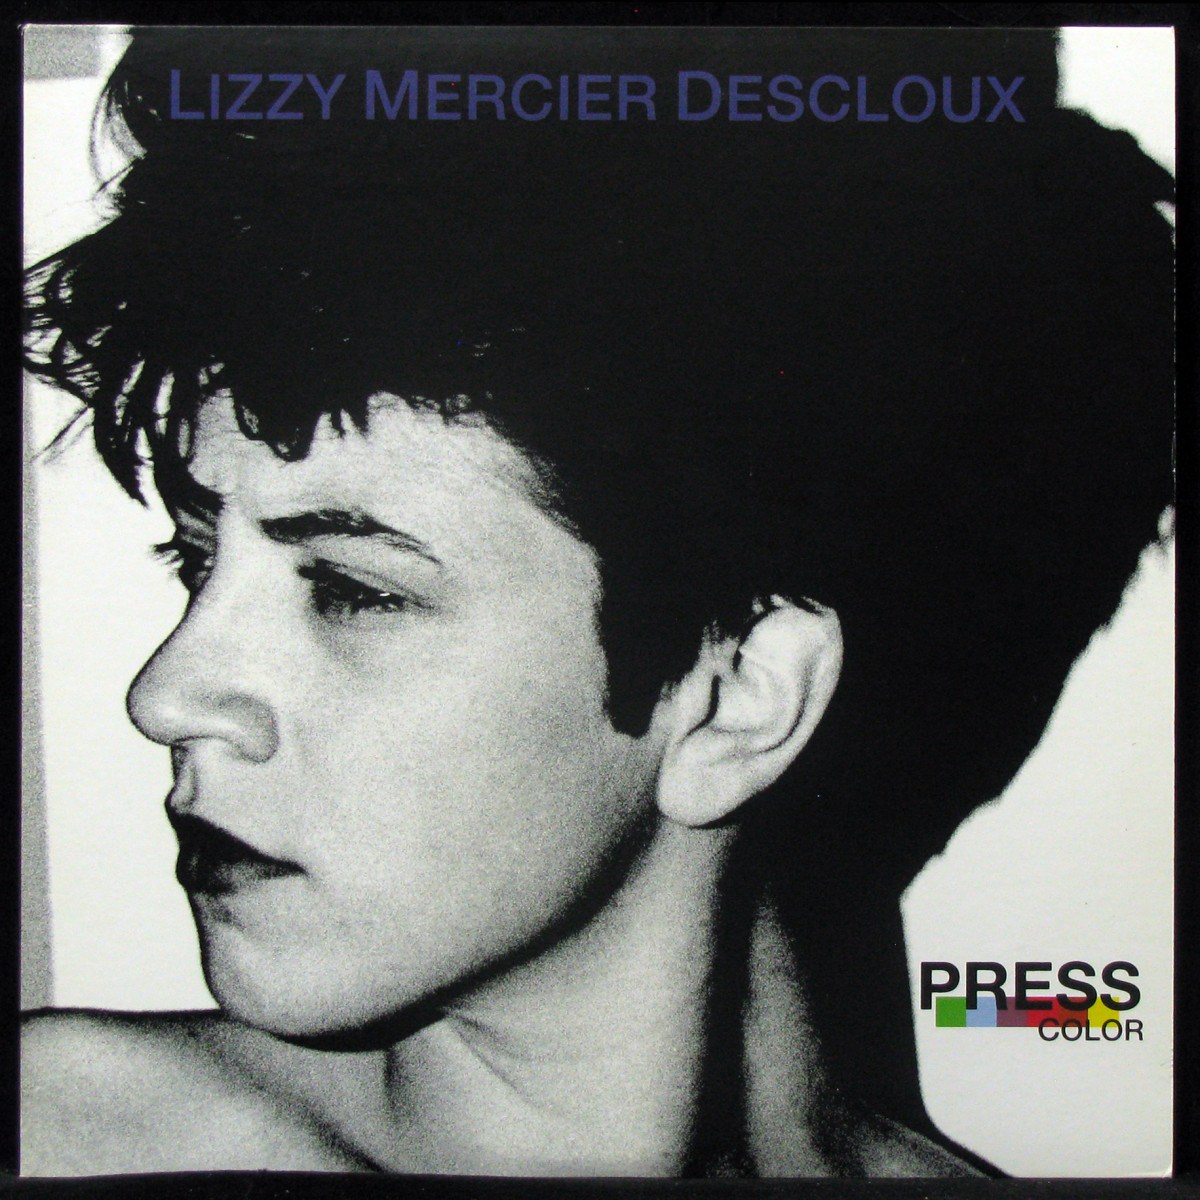 LP Lizzy Mercier Descloux — Press Color (2LP, coloured vinyl, + booklet) фото